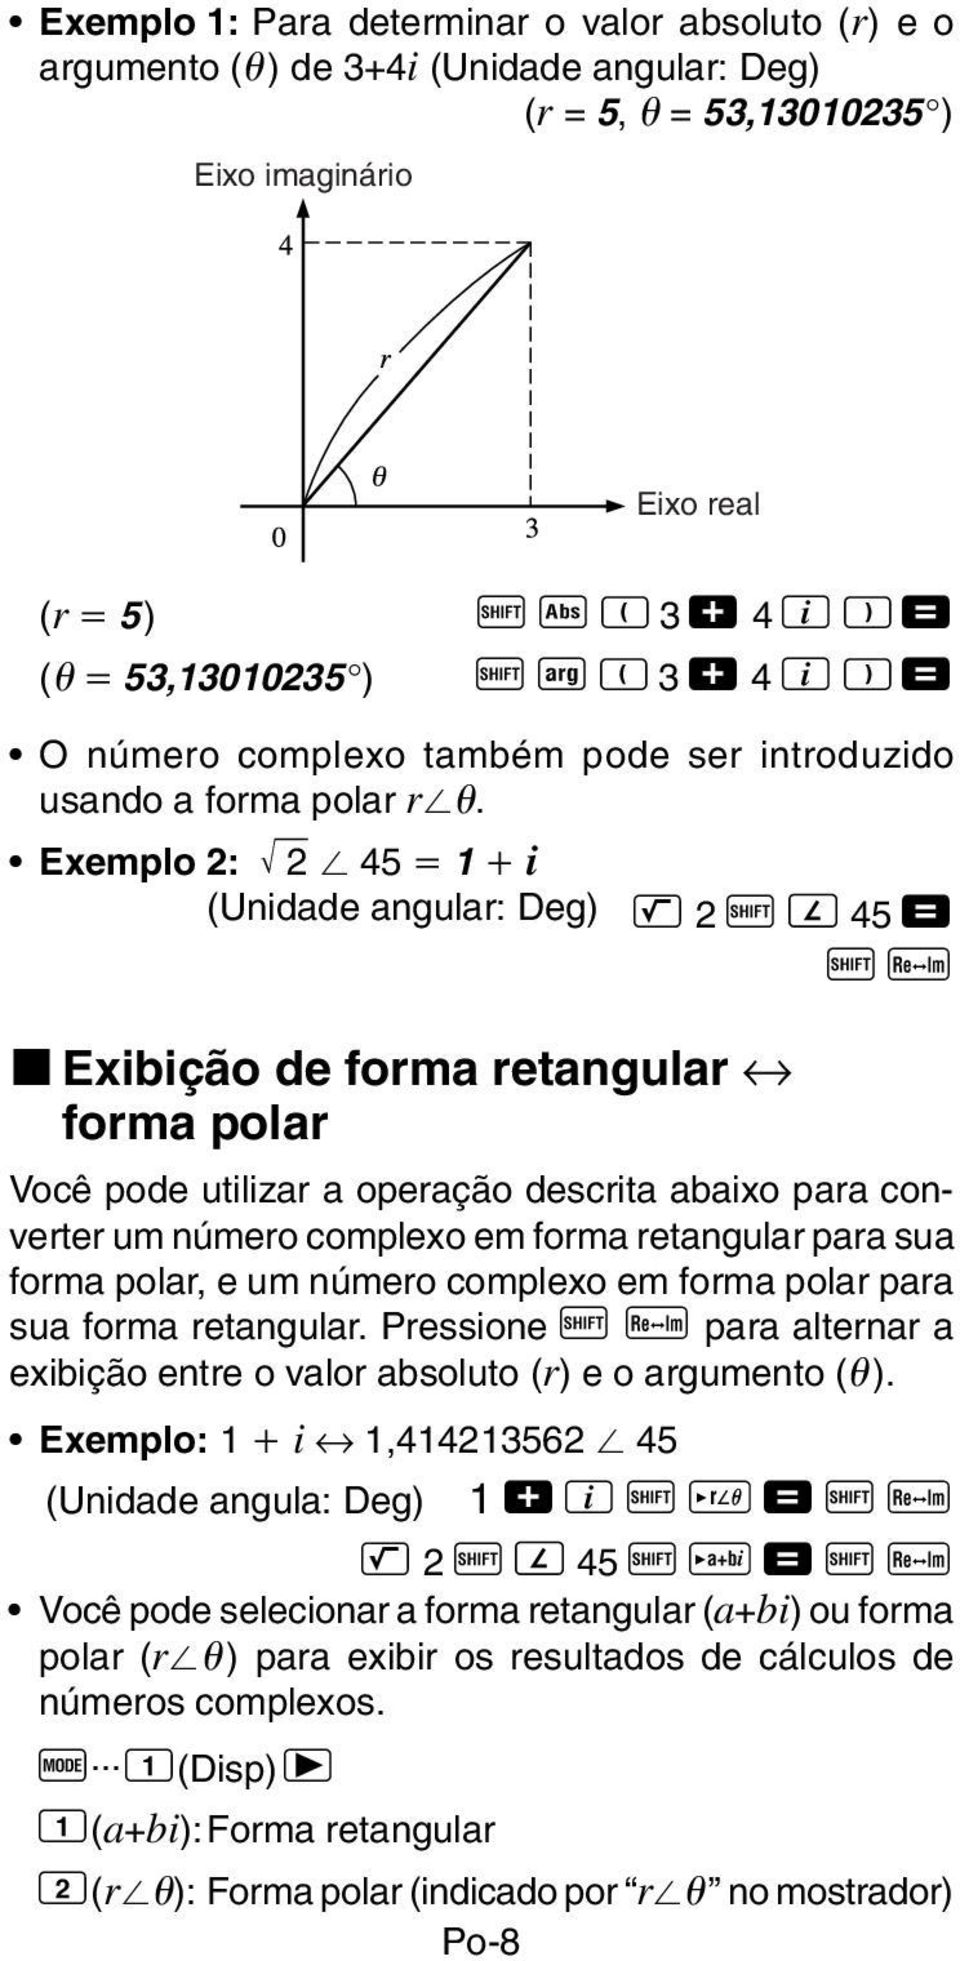 Exemplo 2: 2 45 1 i (Unidade angular: Deg) L 2 A Q 45 = A r k Exibição de forma retangular forma polar Você pode utilizar a operação descrita abaixo para converter um número complexo em forma